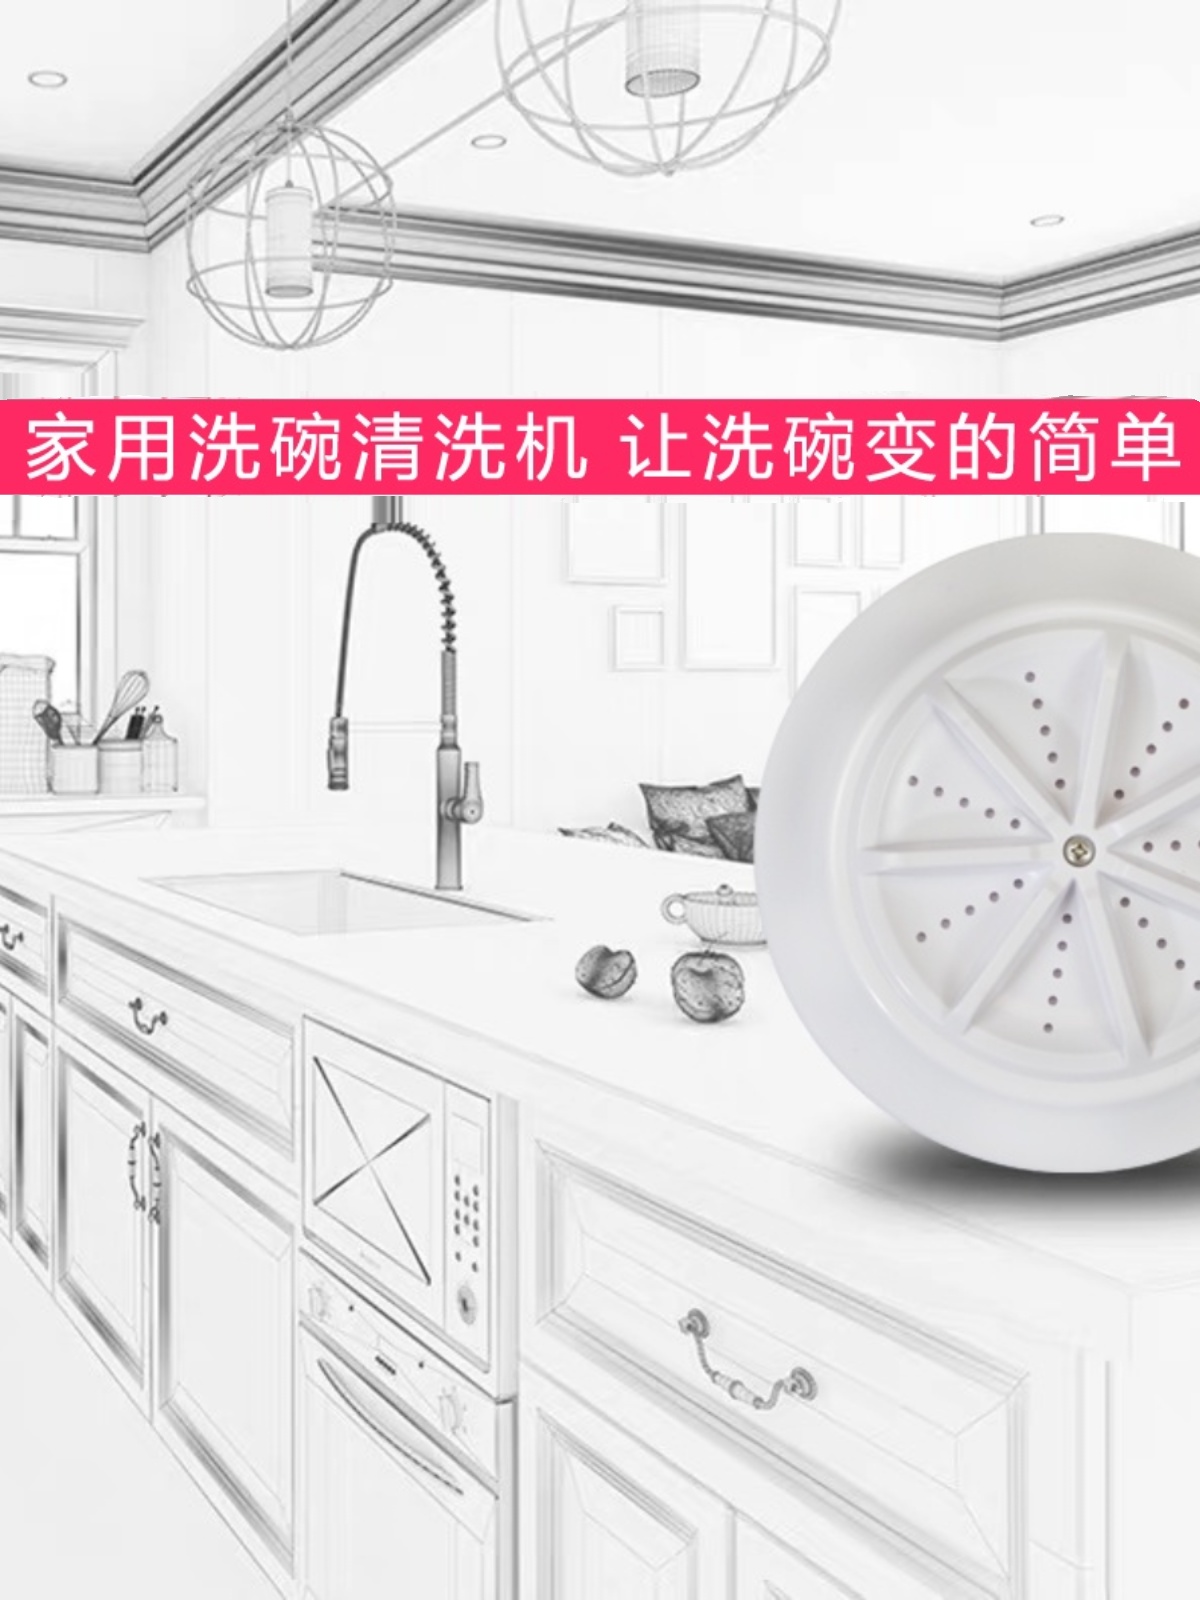 洗碗机家用小型免安装水槽式自动刷碗神器可移动迷你超声波洗碗机